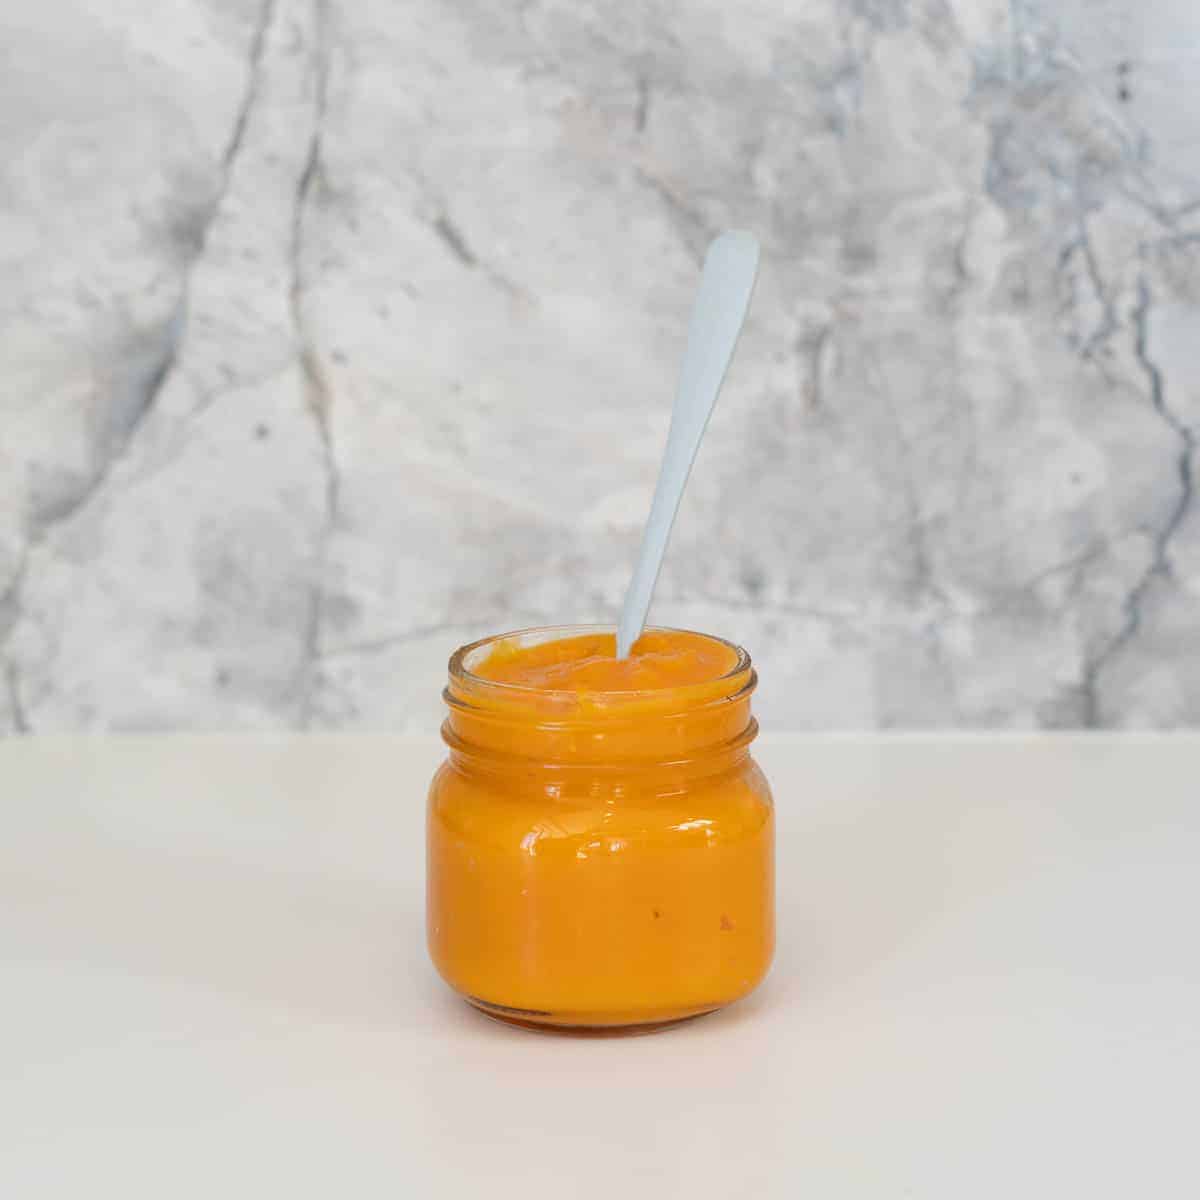 A jar of orange puree